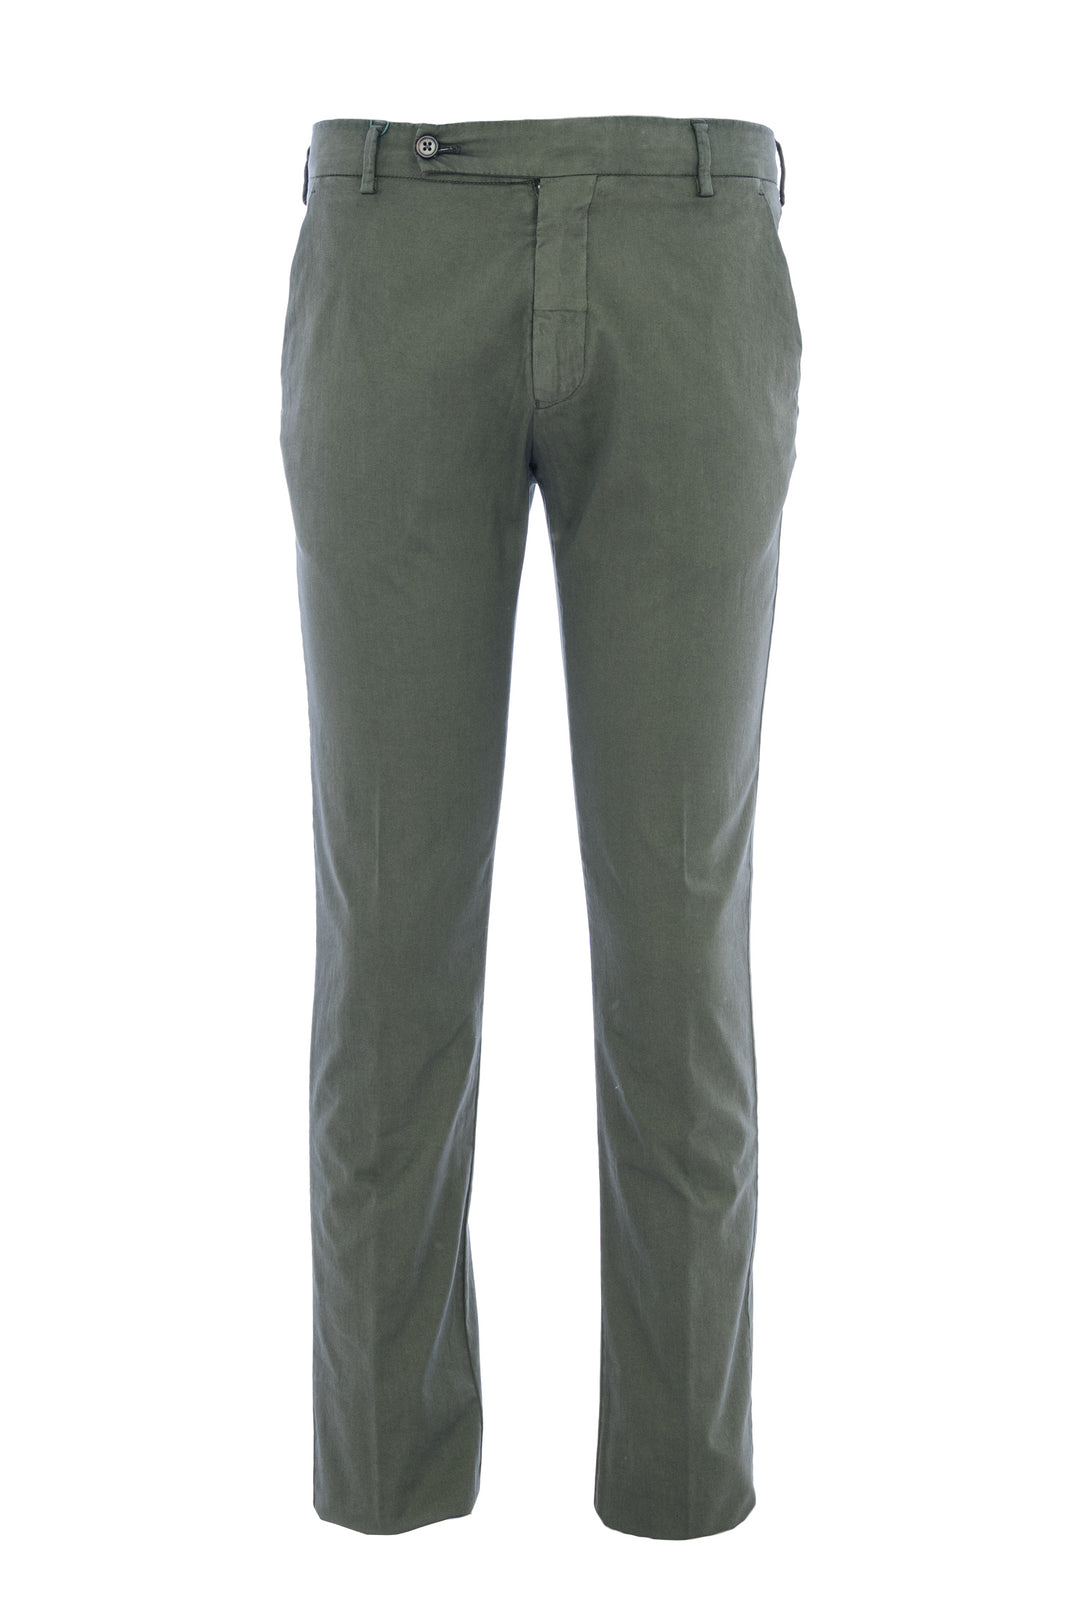 BERWICH Pantalone in misto cotone e seta verde militare - Mancinelli 1954